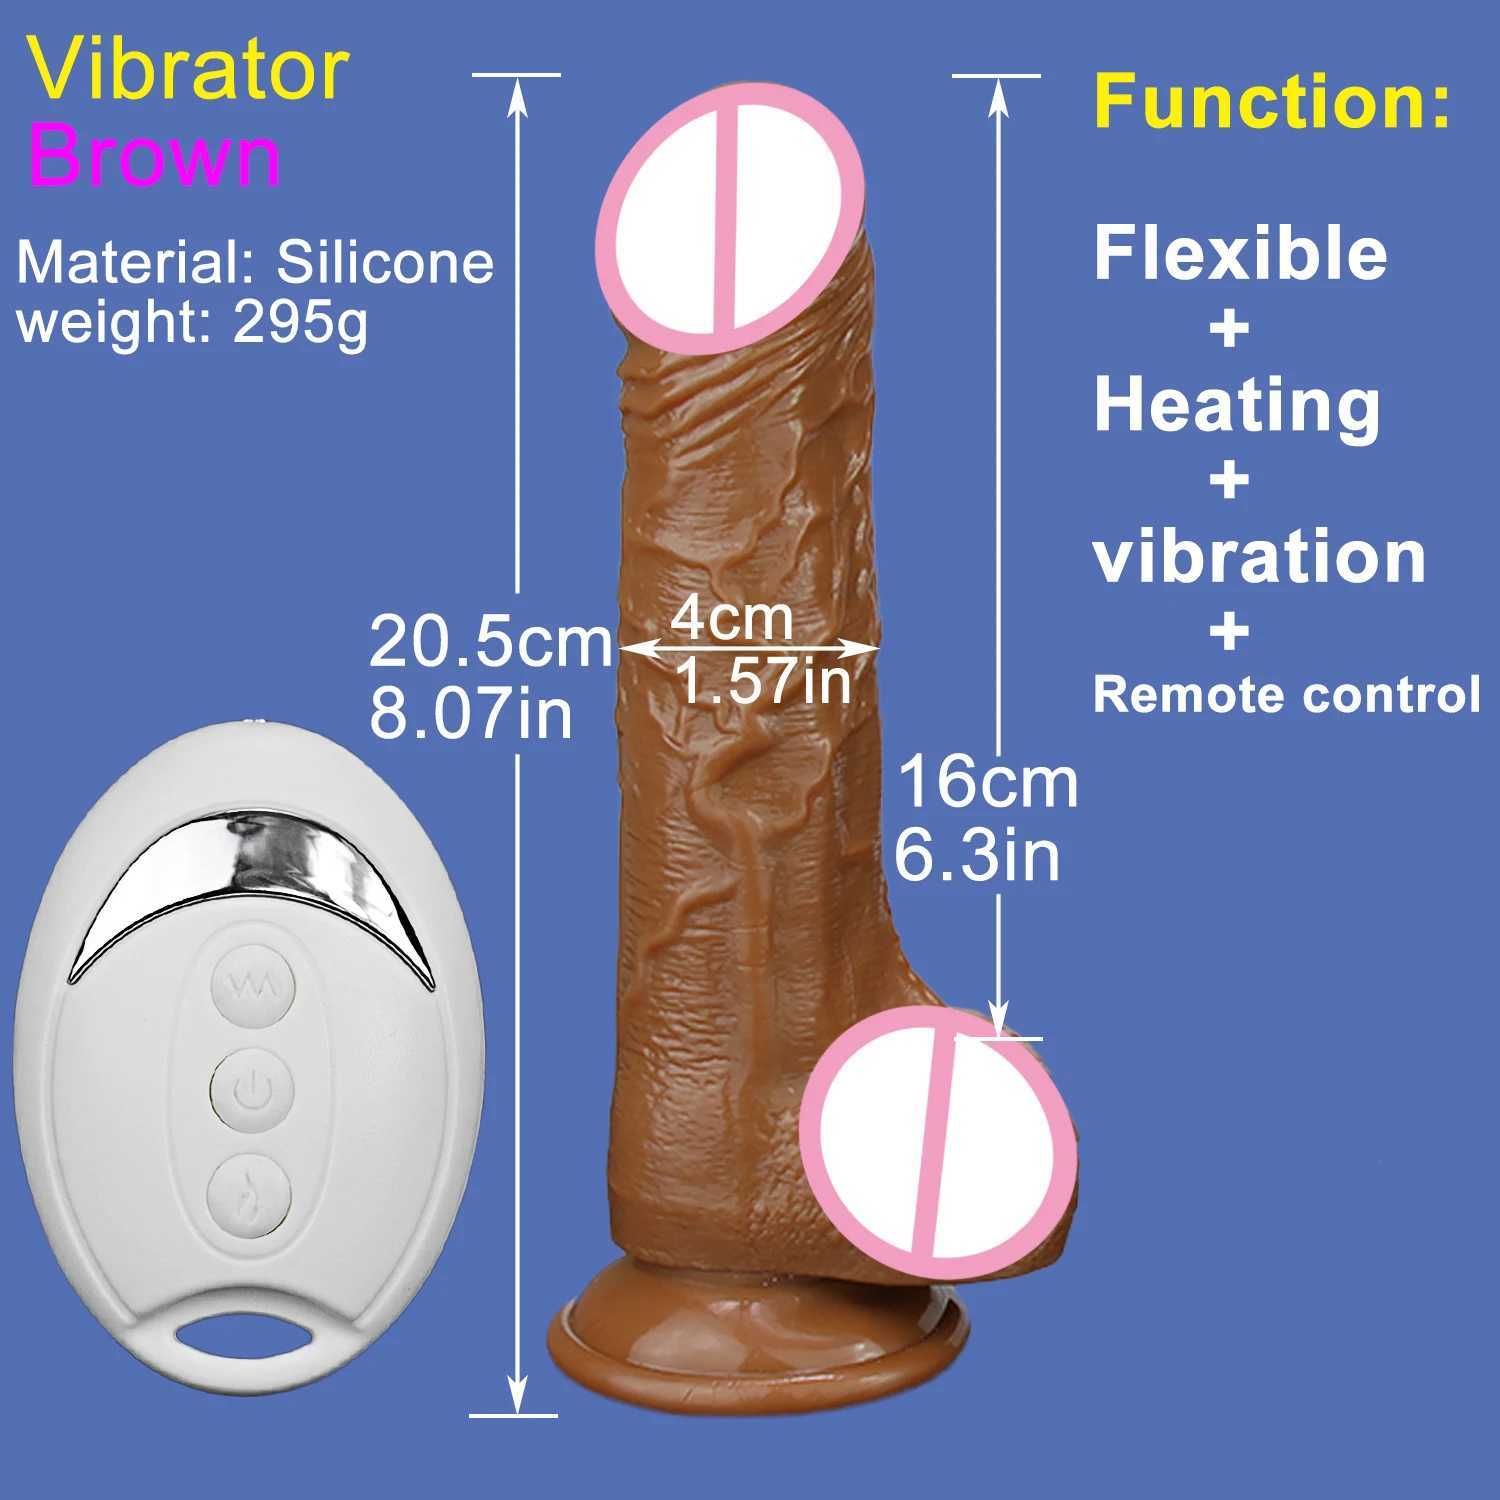 Vibrator-brown